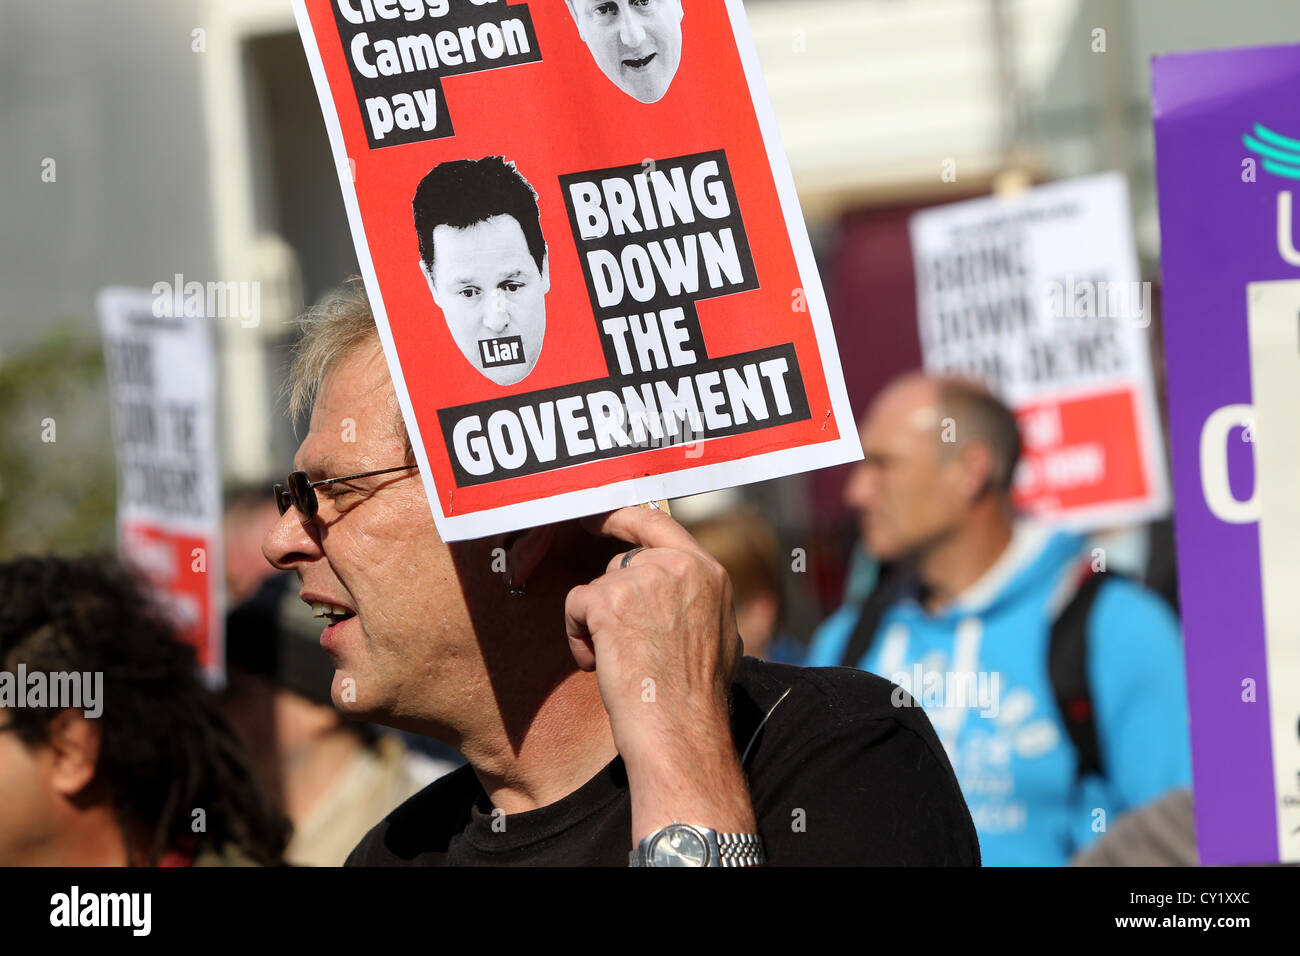 Demonstranten im Bild während einer Protestaktion gegen die Regierung Kürzungen in Brighton, East Sussex, UK. Stockfoto